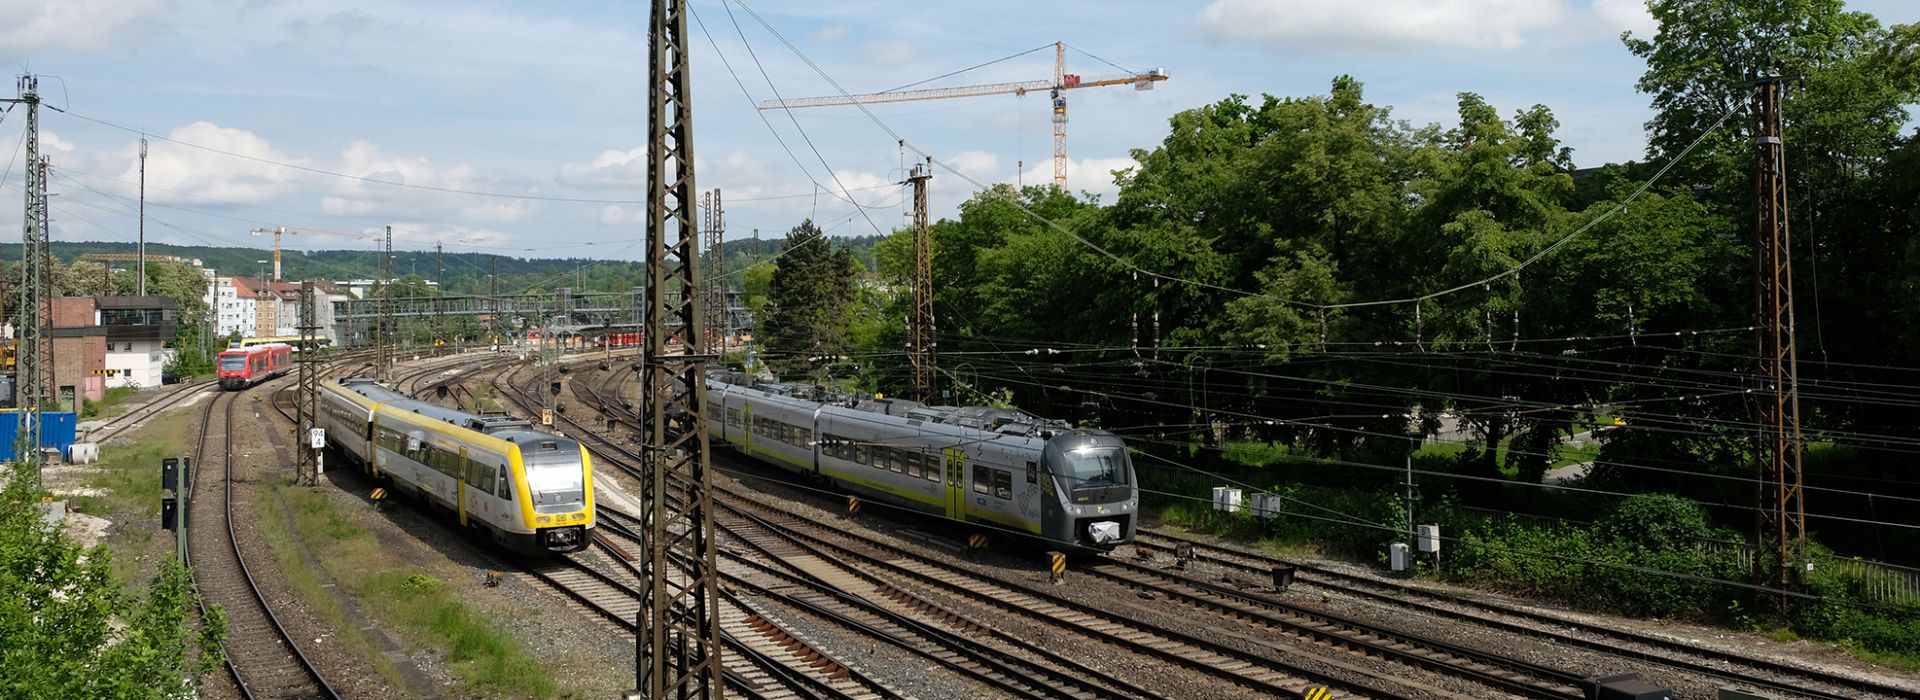 Arrivo in autobus/auto  Raggiungere Ulma / Nuova Ulma su strada è facile. Le città gemelle del Danubio sono facilmente raggiungibili con l'autostrada A8 (Stoccarda - Monaco di Baviera) e la A7 (Wuerzburg - Füssen).  Al centro portano diverse strade statali e provinciali, le più importanti sono la B10, B19, B28, B30 e B311.    Arrivo in treno  Ulma è una grande città e comodamente collegata alla rete ferroviaria. Sia con ICE, IC/EC o treni notturni per il viaggiatore è sempre facile raggiungere le città gemelle del Danubio, velocemente e comodamente.  Molti treni regionali si fermano qui. Così si può raggiungere la stazione centrale di Ulma o la nuova stazione di Nuova Ulma dal Lago di Costanza, Allgäu, Alpi Sveve o Svevia bavarese, senza deviazioni. Una soluzione economica è quella di viaggiare con il biglietto Baden-Wuerttemberg e Baviera. Nel frattempo agilis Verkehrsgesellschaft opera lungo la tratta Ulma-Ratisbona.    Arrivo in aereo  Grazie al buon collegamento alla rete ferroviaria, la A7 e la A8 nonché la rete di pullman, è possibile raggiungere Ulma e Nuova Ulma in modo semplice e veloce dagli aeroporti di Stoccarda, Memmingen, Monaco di Baviera e Francoforte.